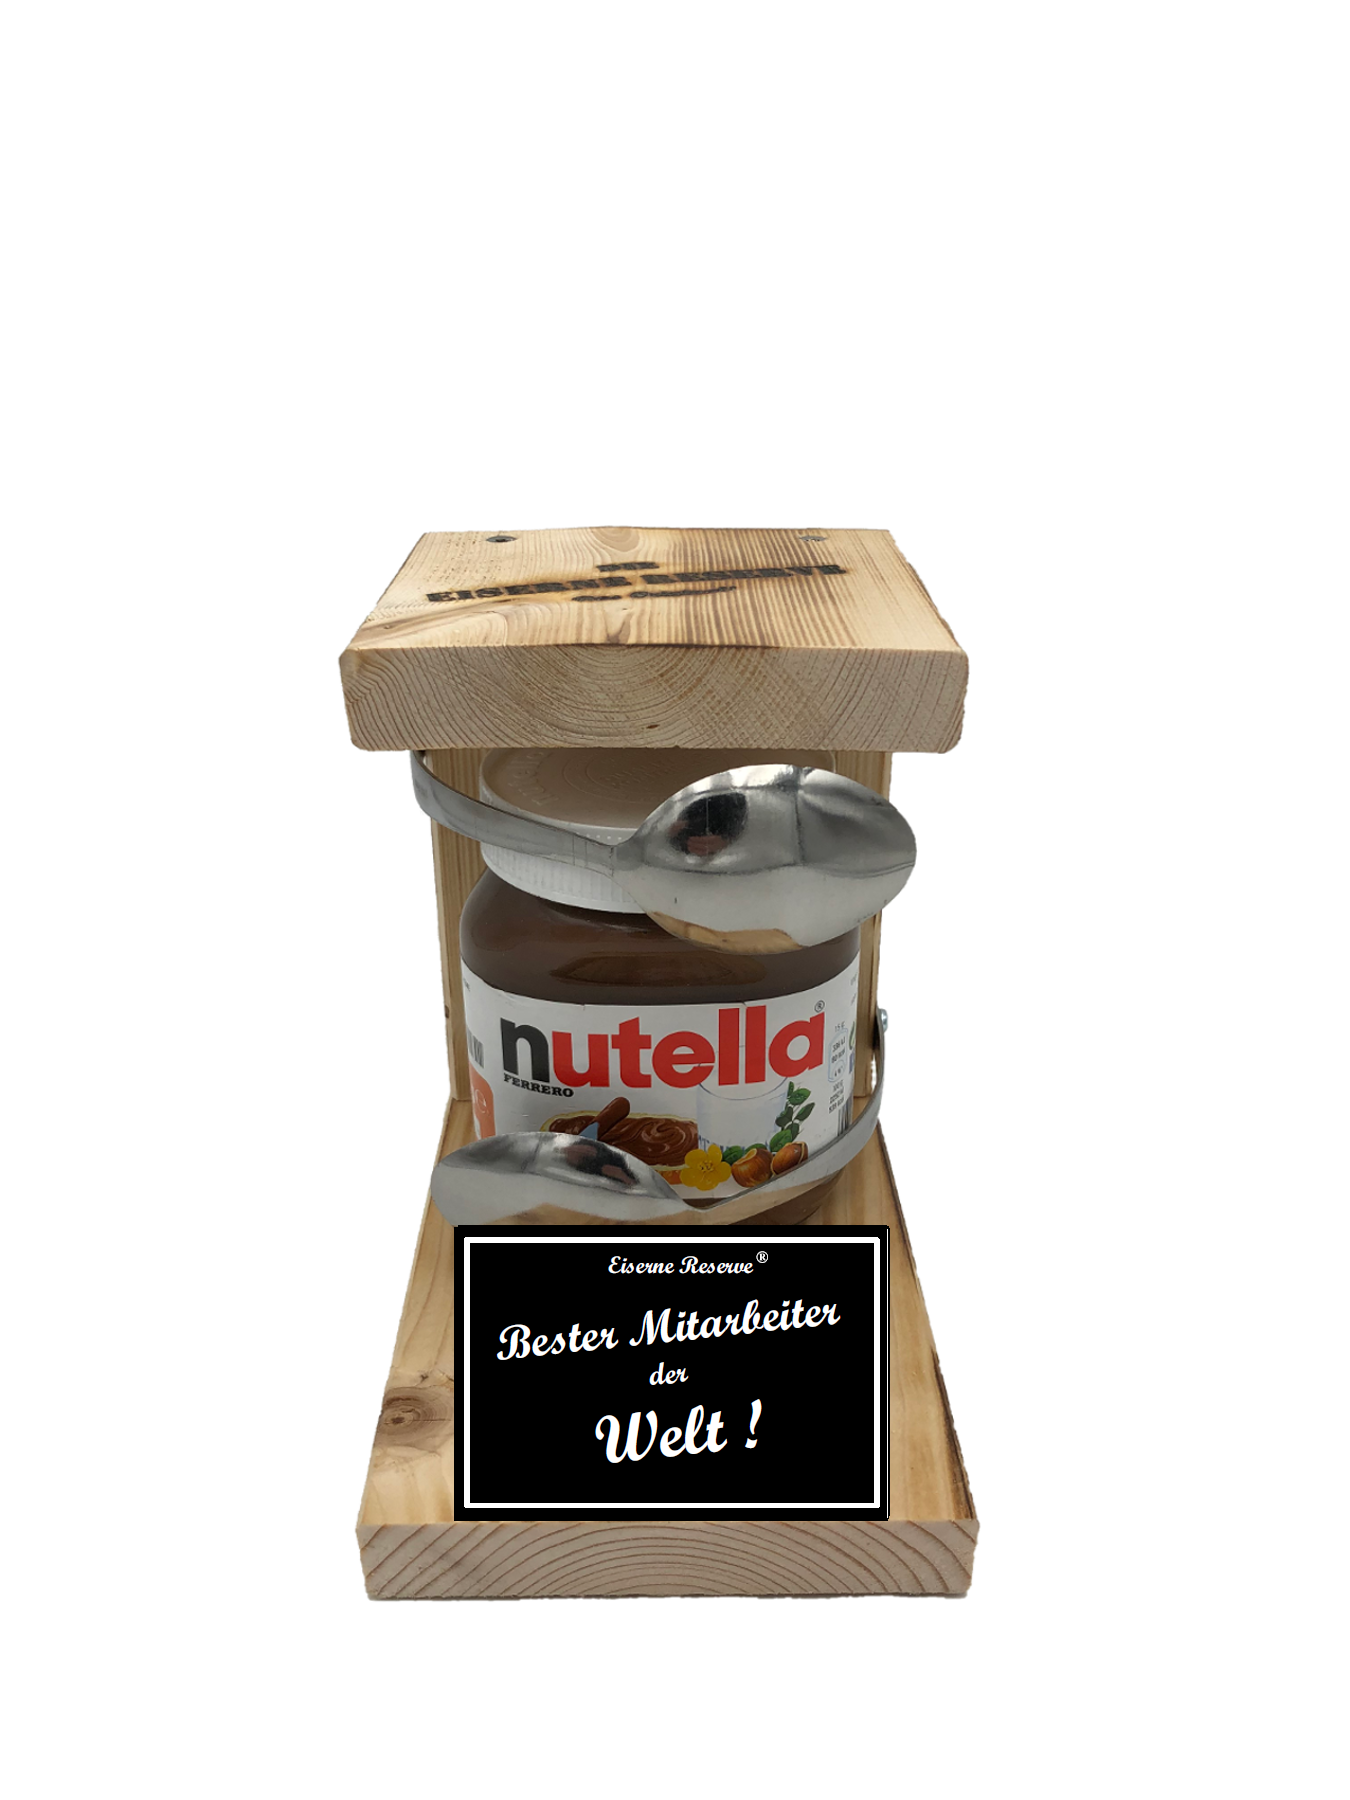 Geschenke Fur Mitarbeiter Loffel Nutella Geschenk Die Nutella Geschenkidee